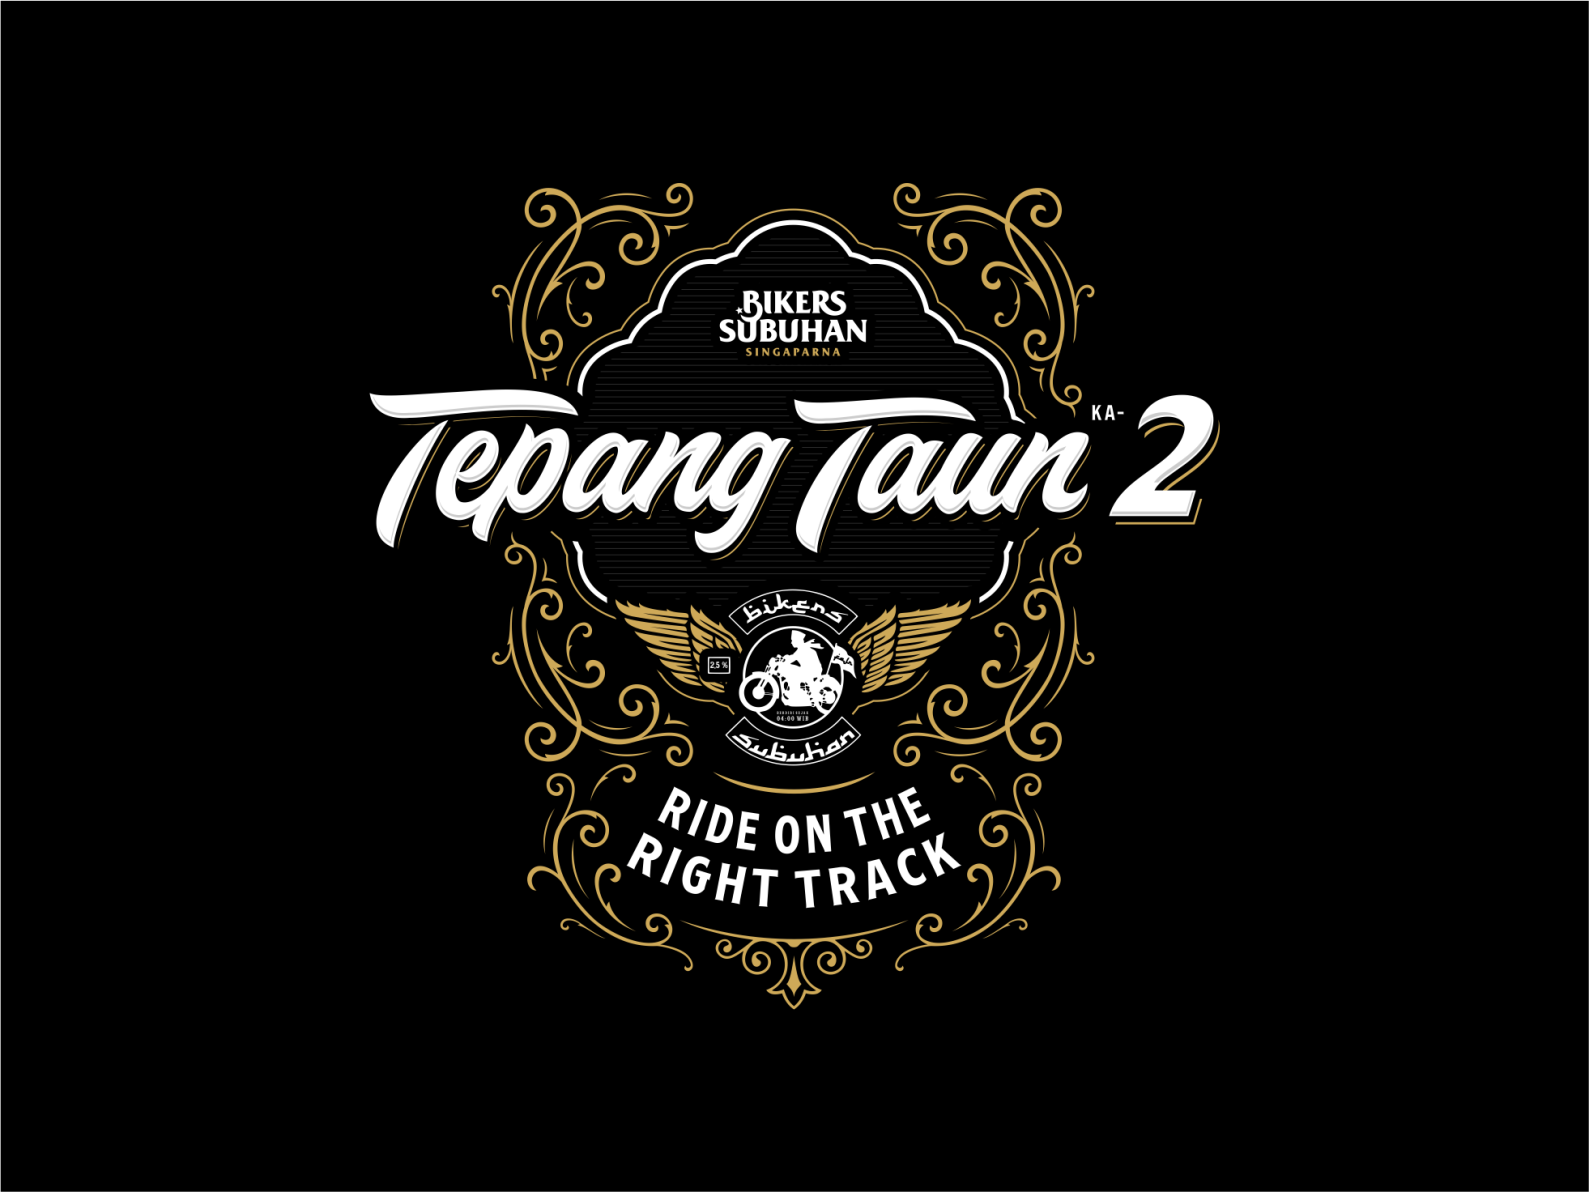 Tepang Taun Ka-2 Bikers Subuhan Singaparna by Kreathifa Studio on Dribbble